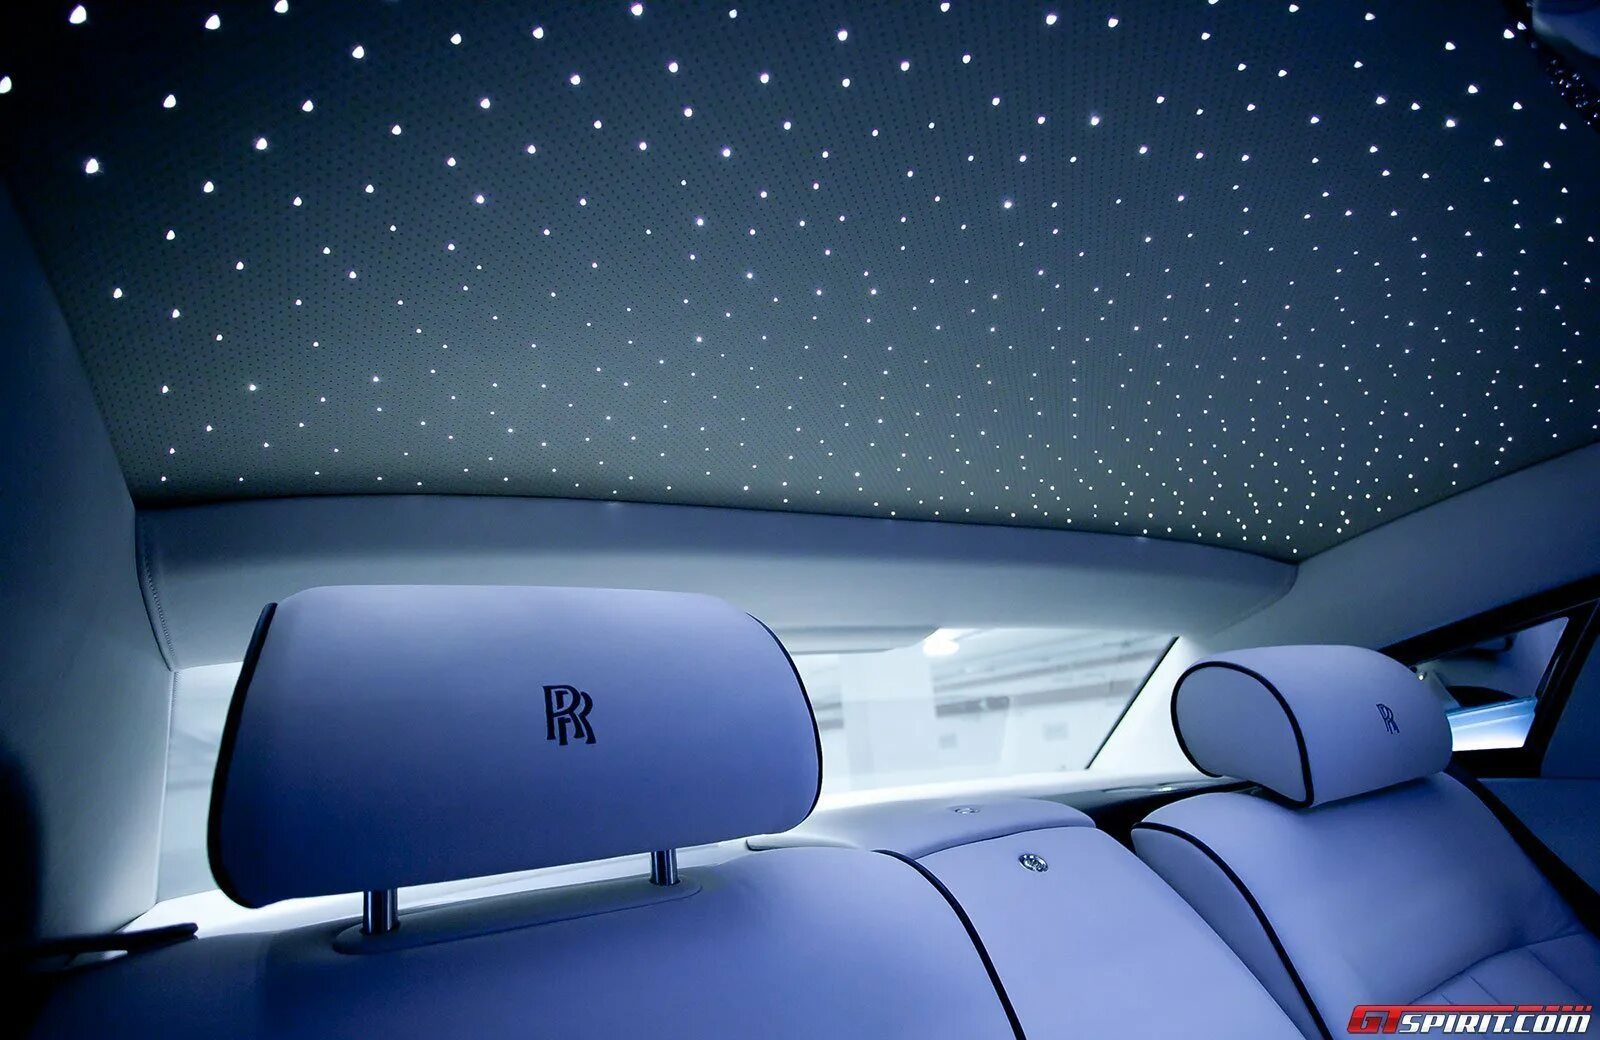 Делаем звездное небо. Звездный потолок Роллс Ройс. Звездное небо Роллс Ройс. Заездный потолок Ролс Ройса. Rolls Royce звездное небо потолок.